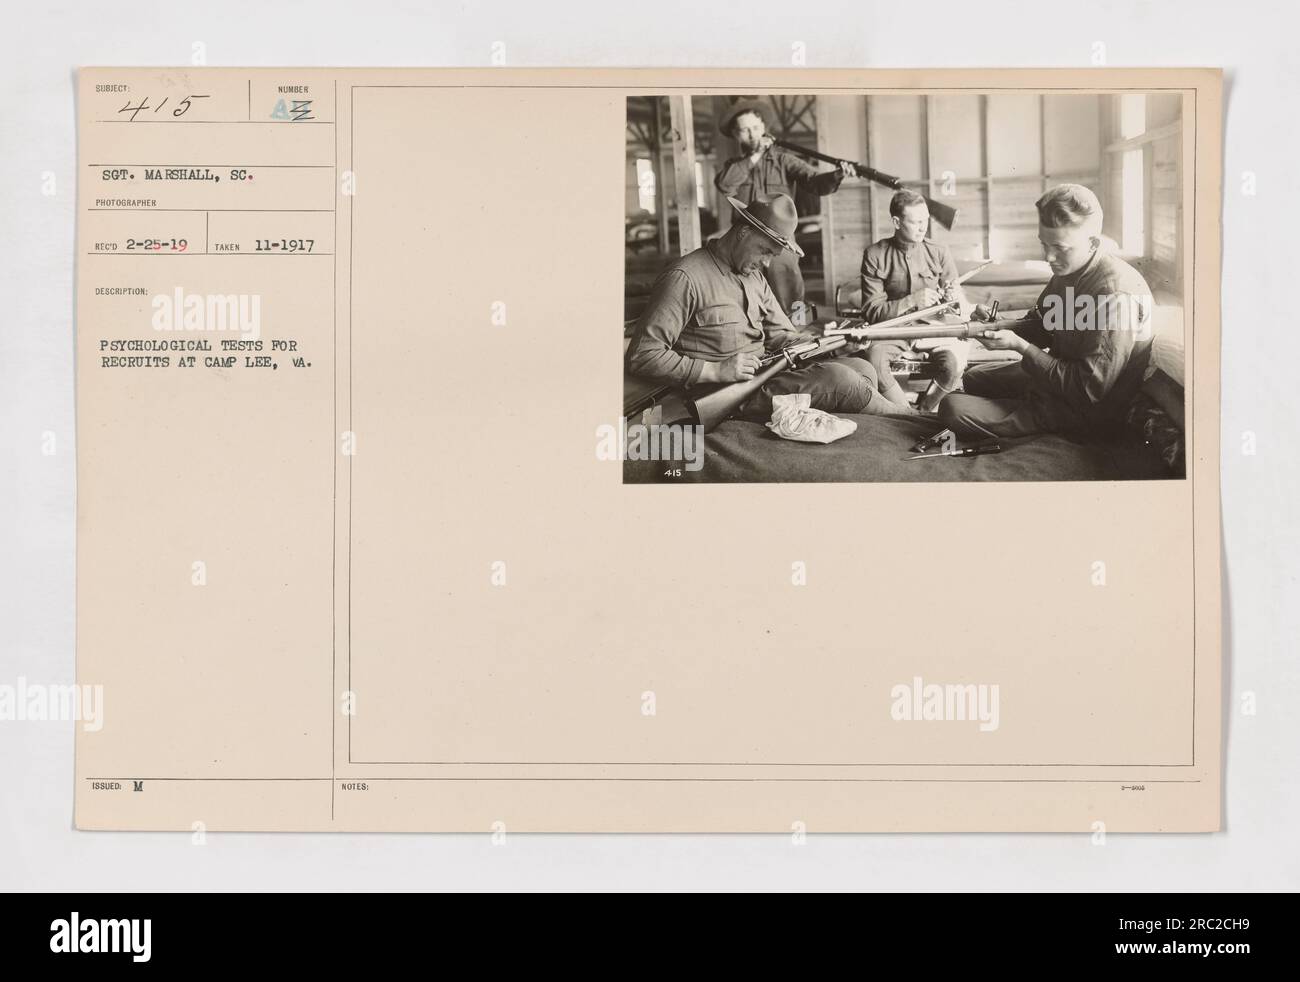 Rekruten in Camp Lee, VA, machen psychologische Tests als Teil ihrer Ausbildung. Dieses Bild zeigt eine Gruppe von Rekruten, die diesen Tests unterzogen werden, bekannt als WUNDER AZ psychologische Tests. Das Foto wurde am 1917. November vom Fotografen Sot aufgenommen. Marshall, und ist Teil einer Sammlung, die amerikanische Militäraktivitäten während des Ersten Weltkriegs dokumentiert Stockfoto